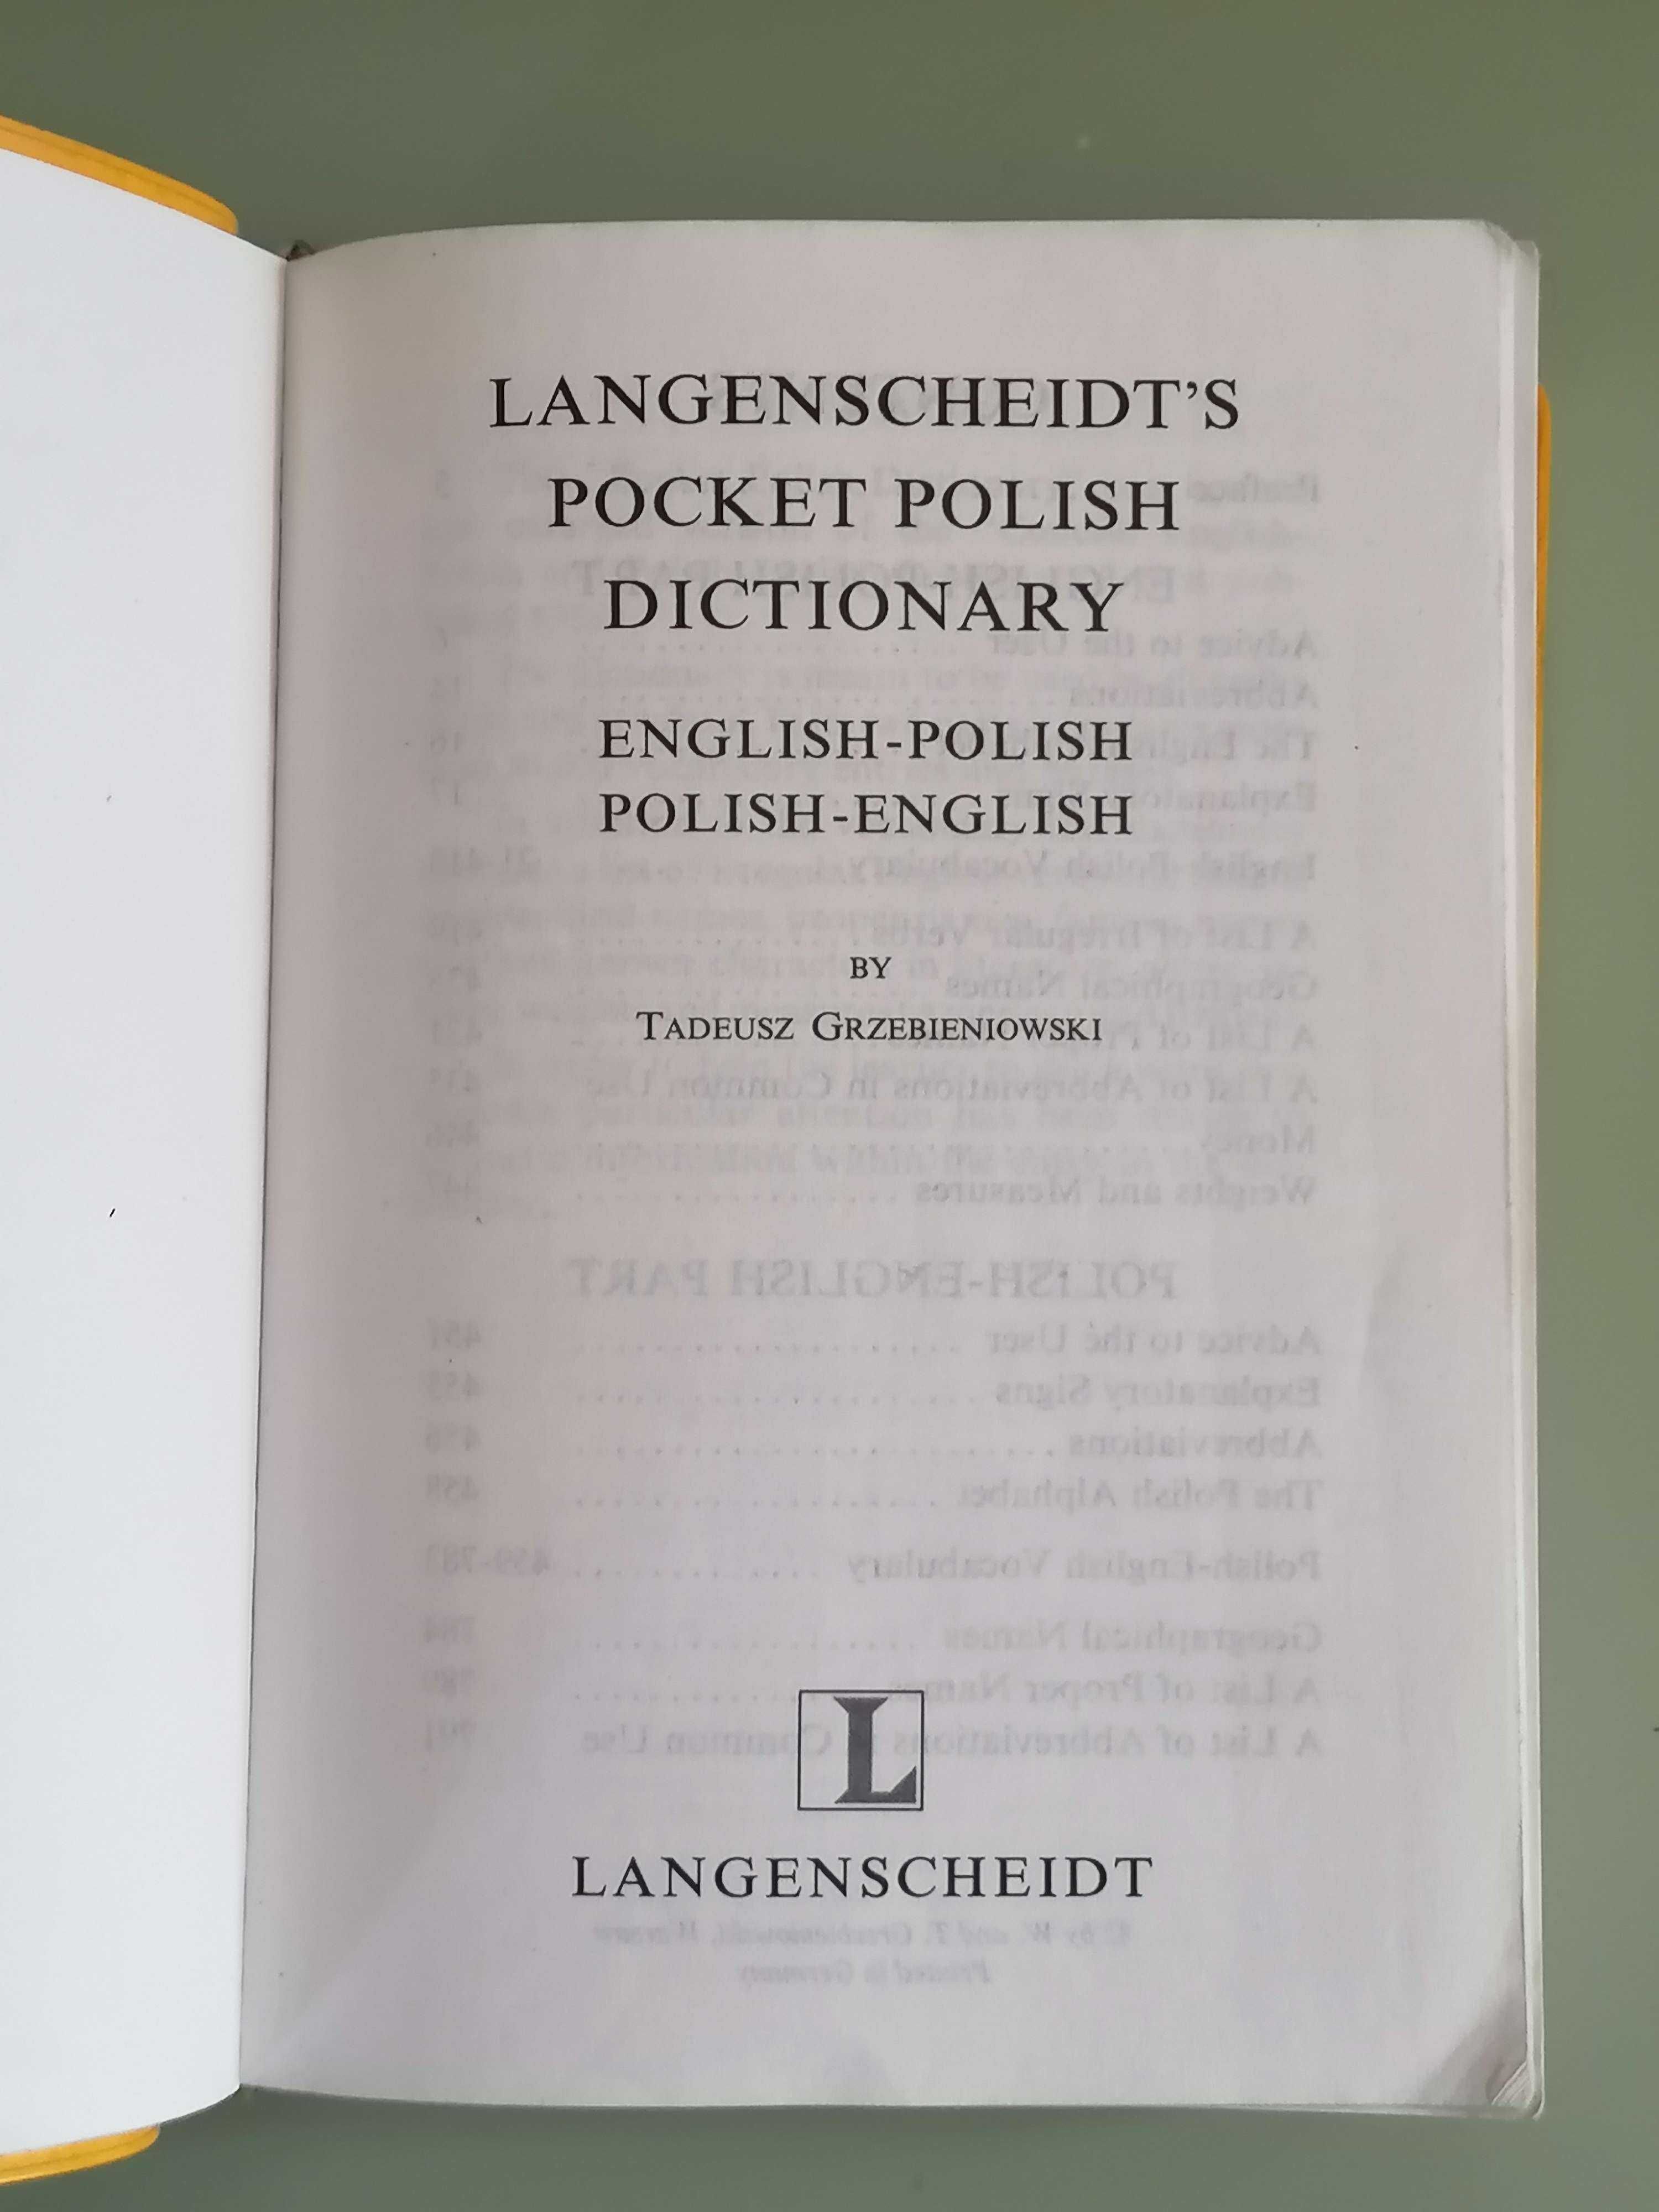 Pocket Polish Dictionary - Langenscheidt - Tadeusz Grzebieniowski